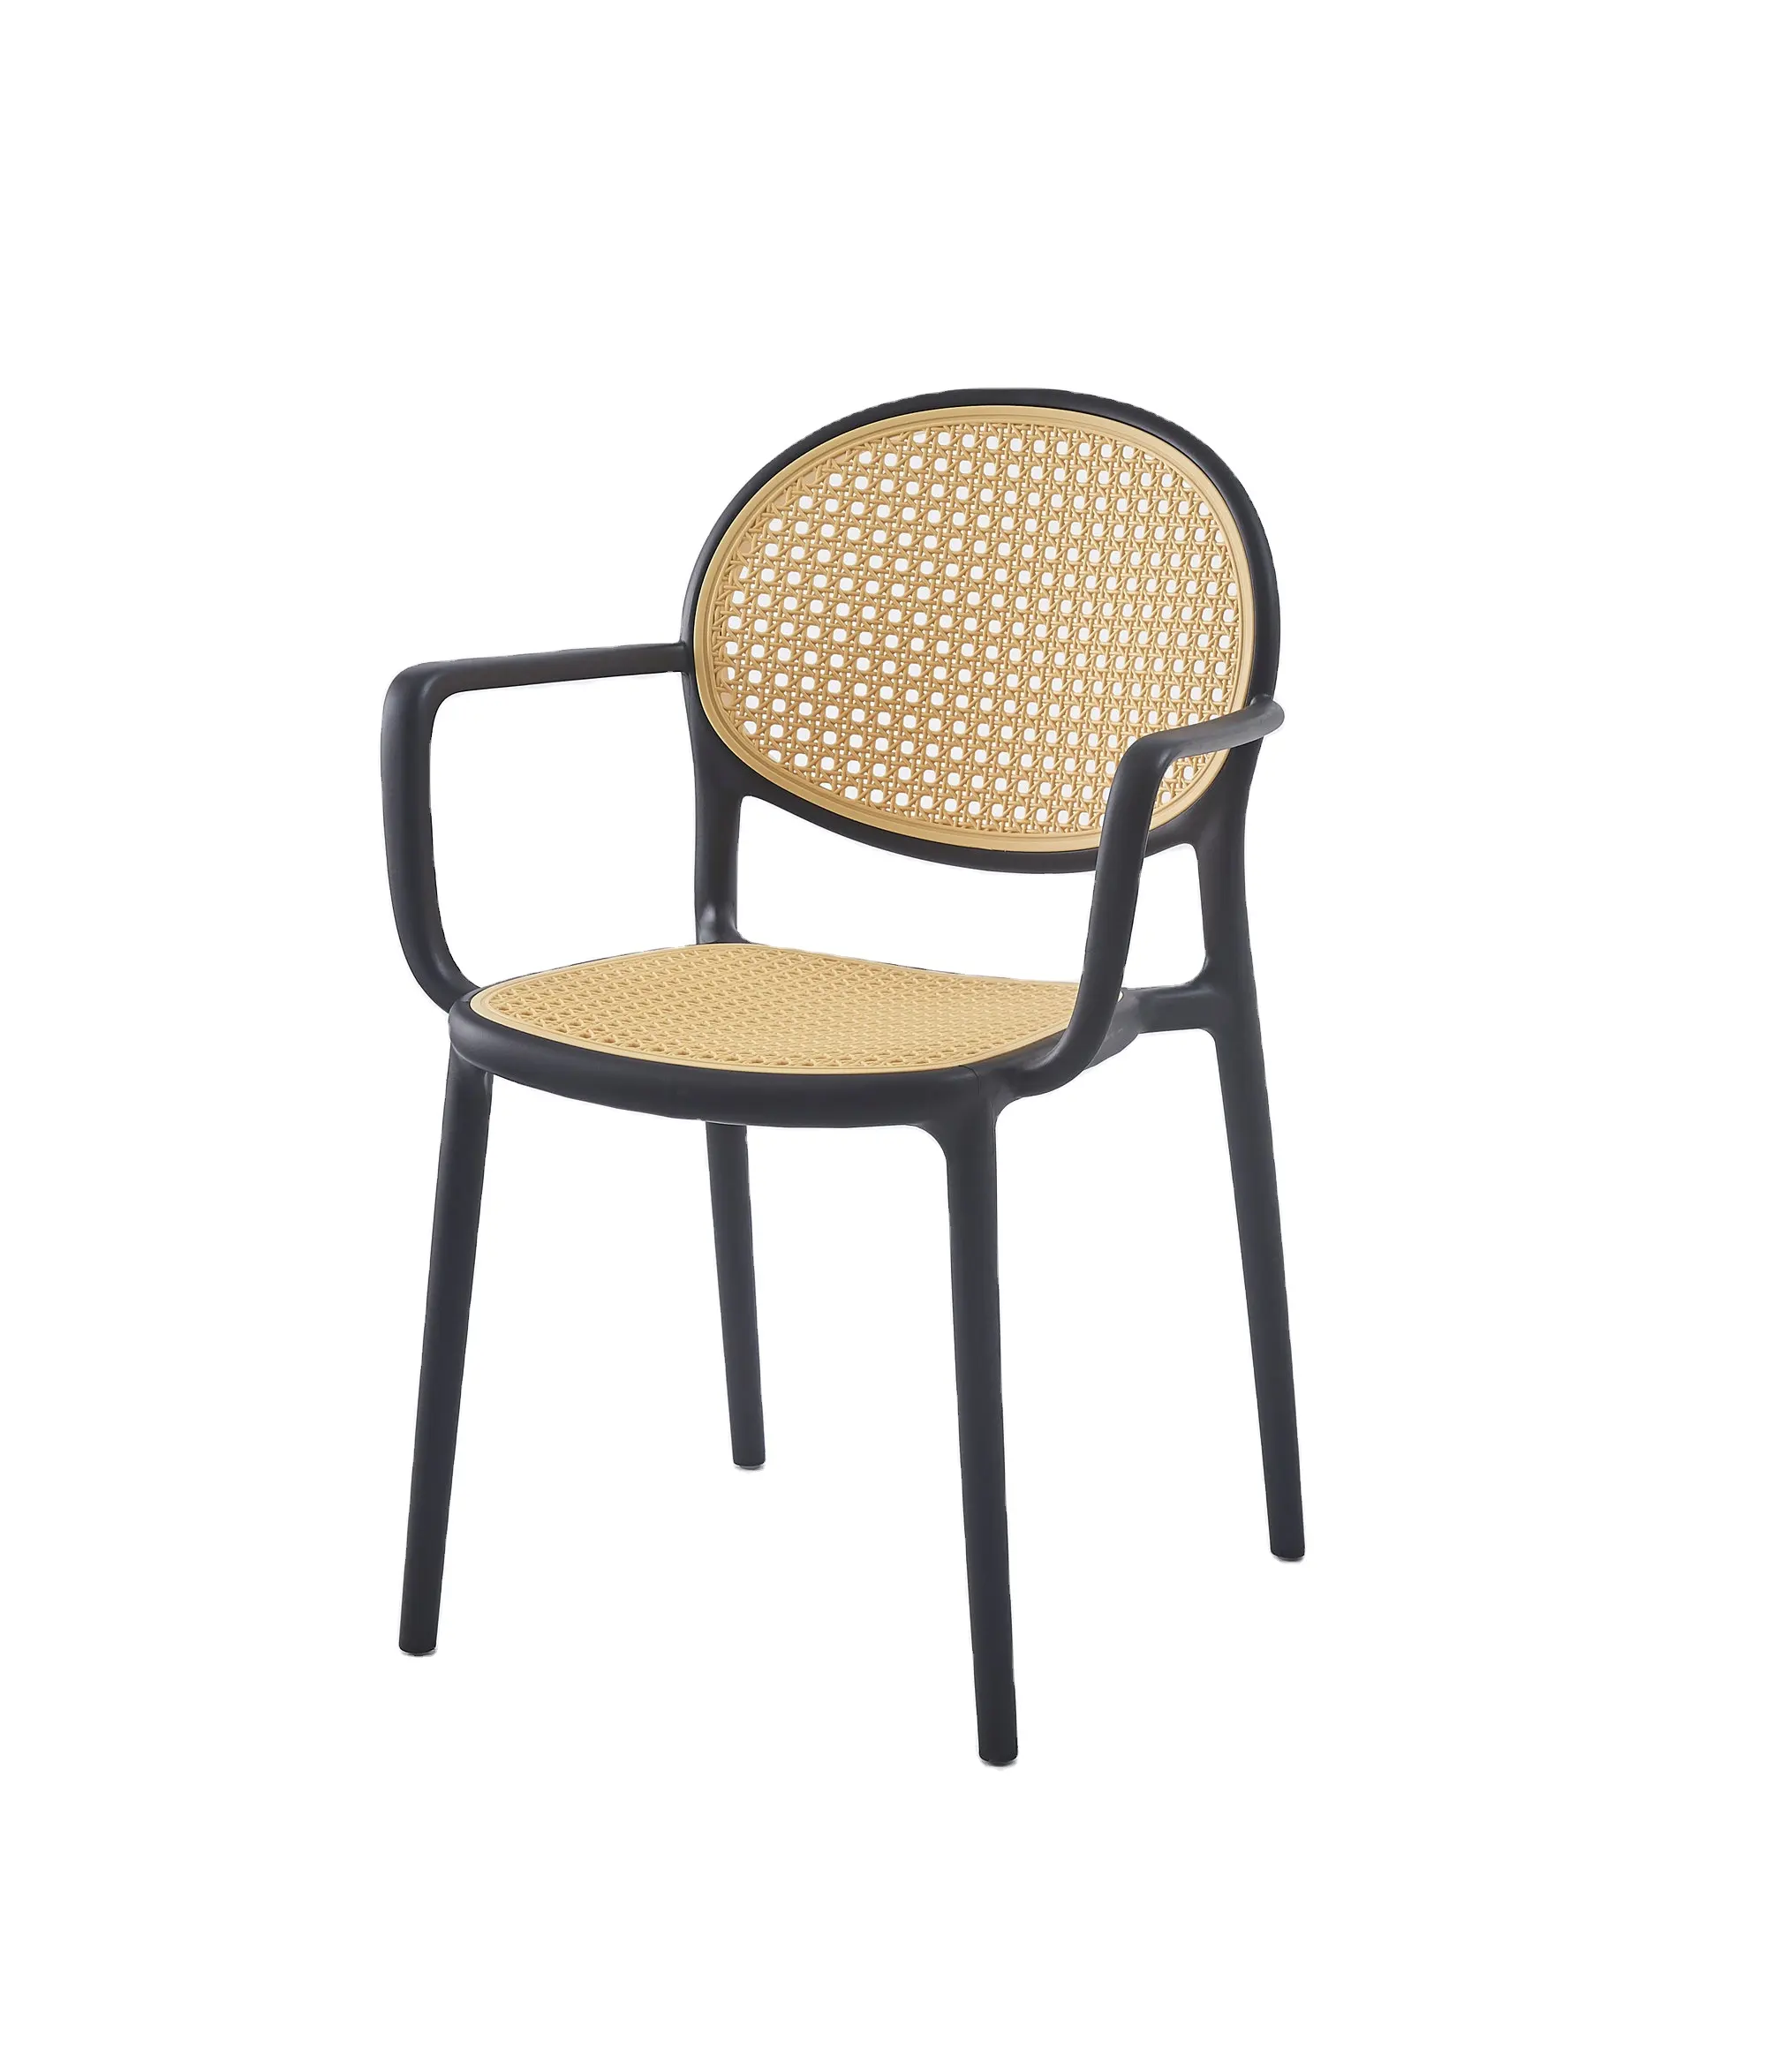 Durevole design moderno nuovo prezzo monoblocco sedie da pranzo PP braccioli impilabili in plastica colorata mobili per la casa